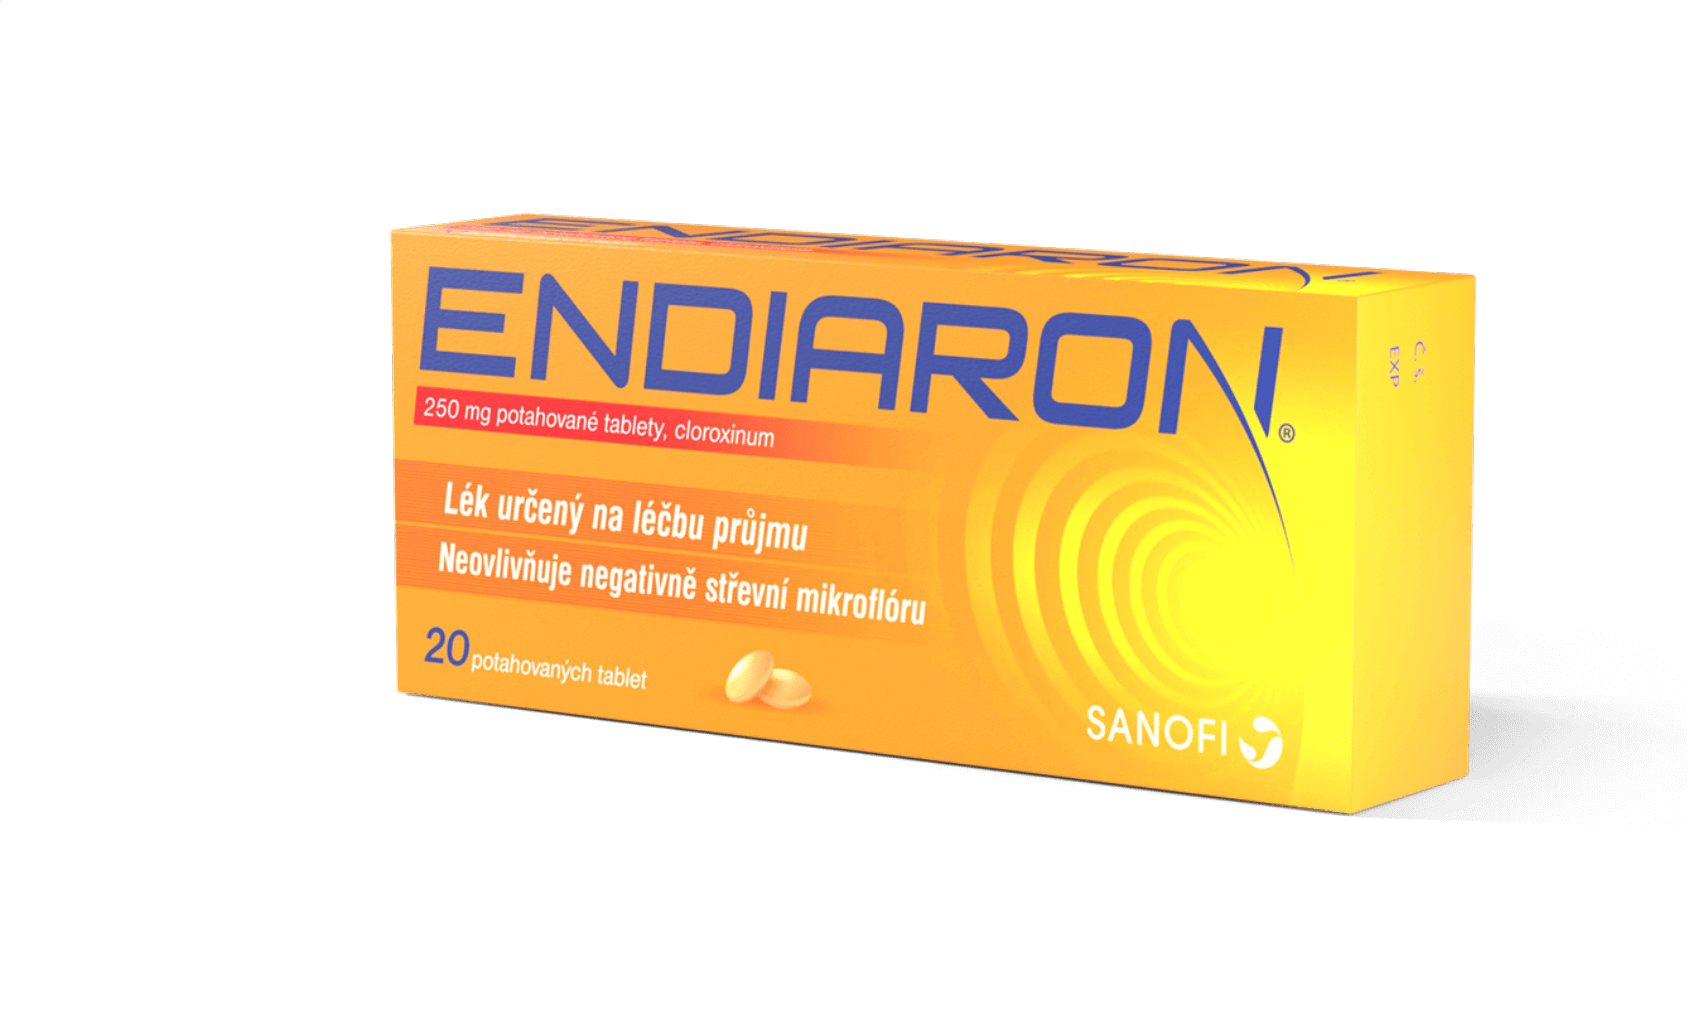 ENDIARON®